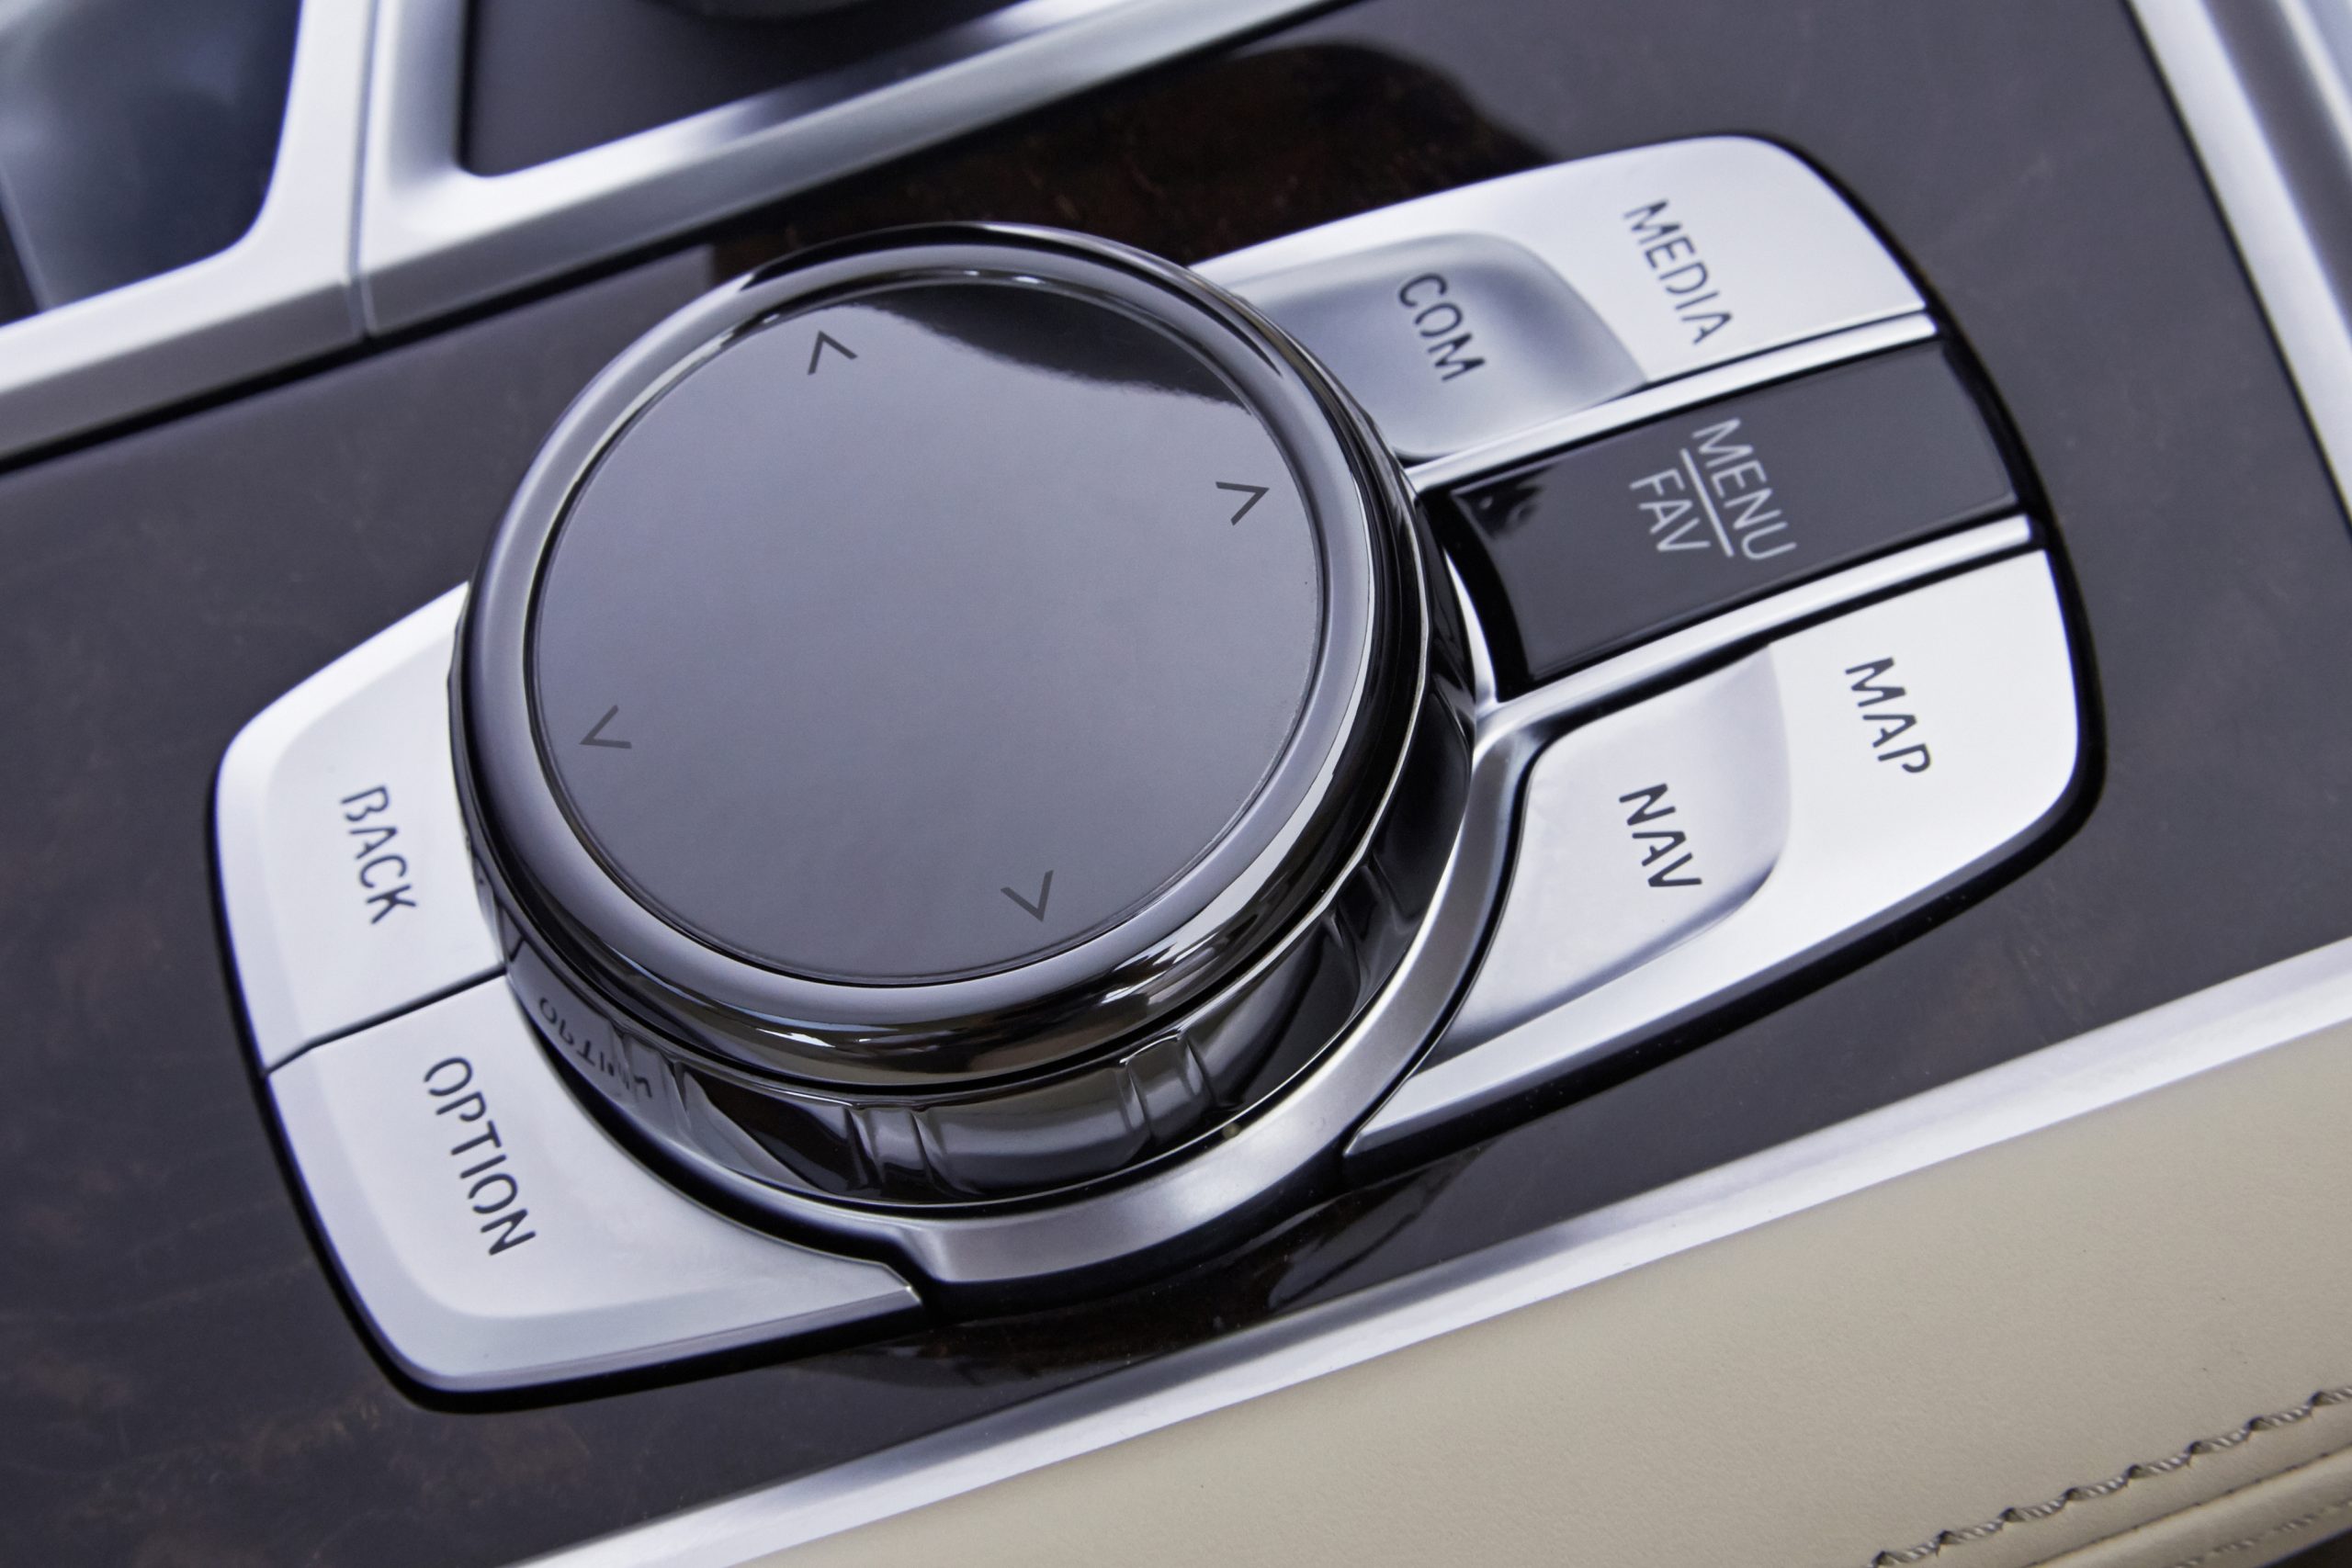 煩雑なスイッチ類を極力減らし、直観的に操作できることを狙った統合コントロール。BMWのiドライブはダイヤル式のコントローラーとプッシュボタンでの簡単操作が特徴。写真は2010年代の